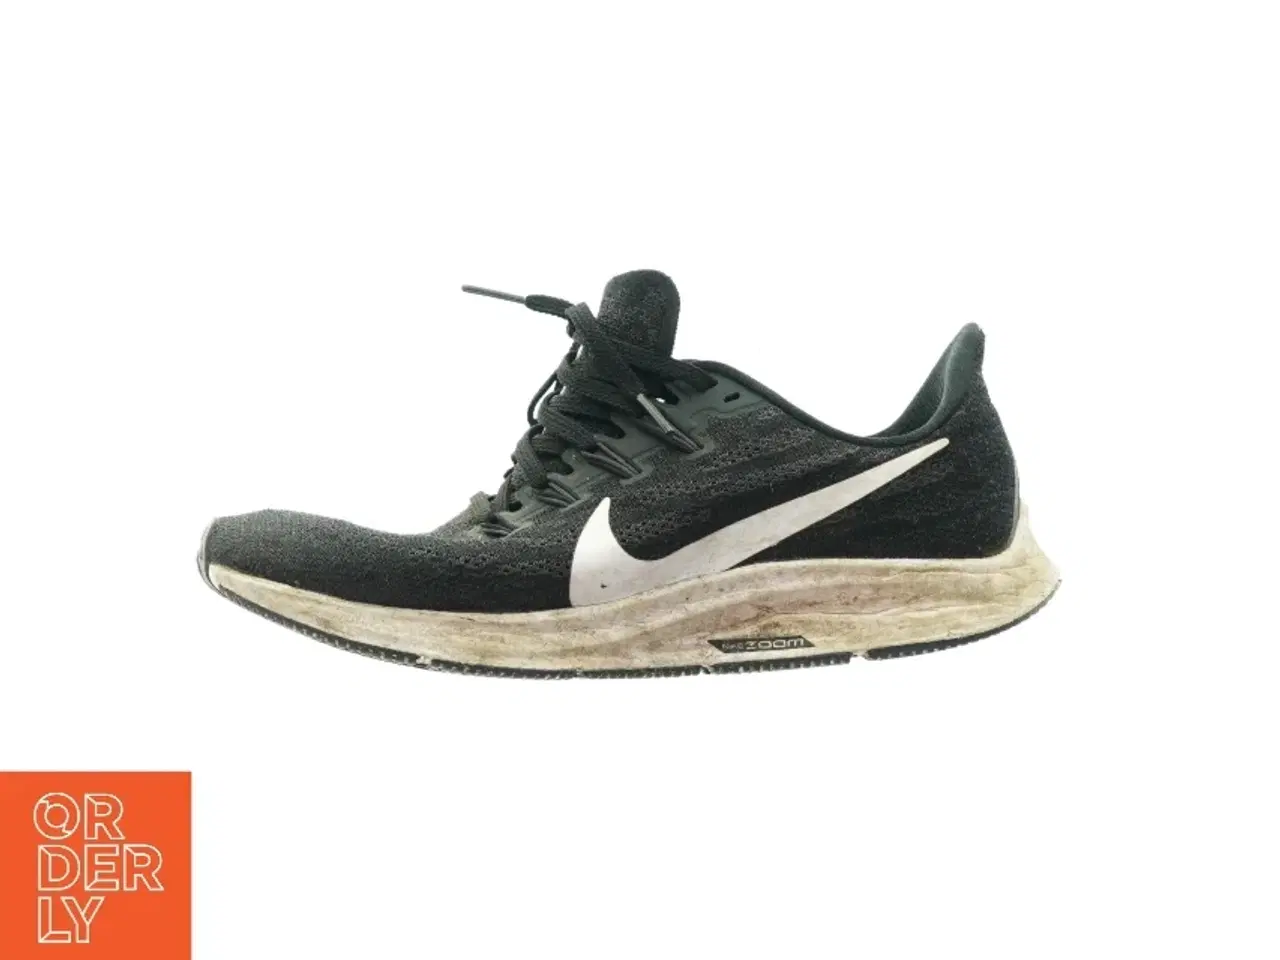 Billede 1 - Sko fra Nike